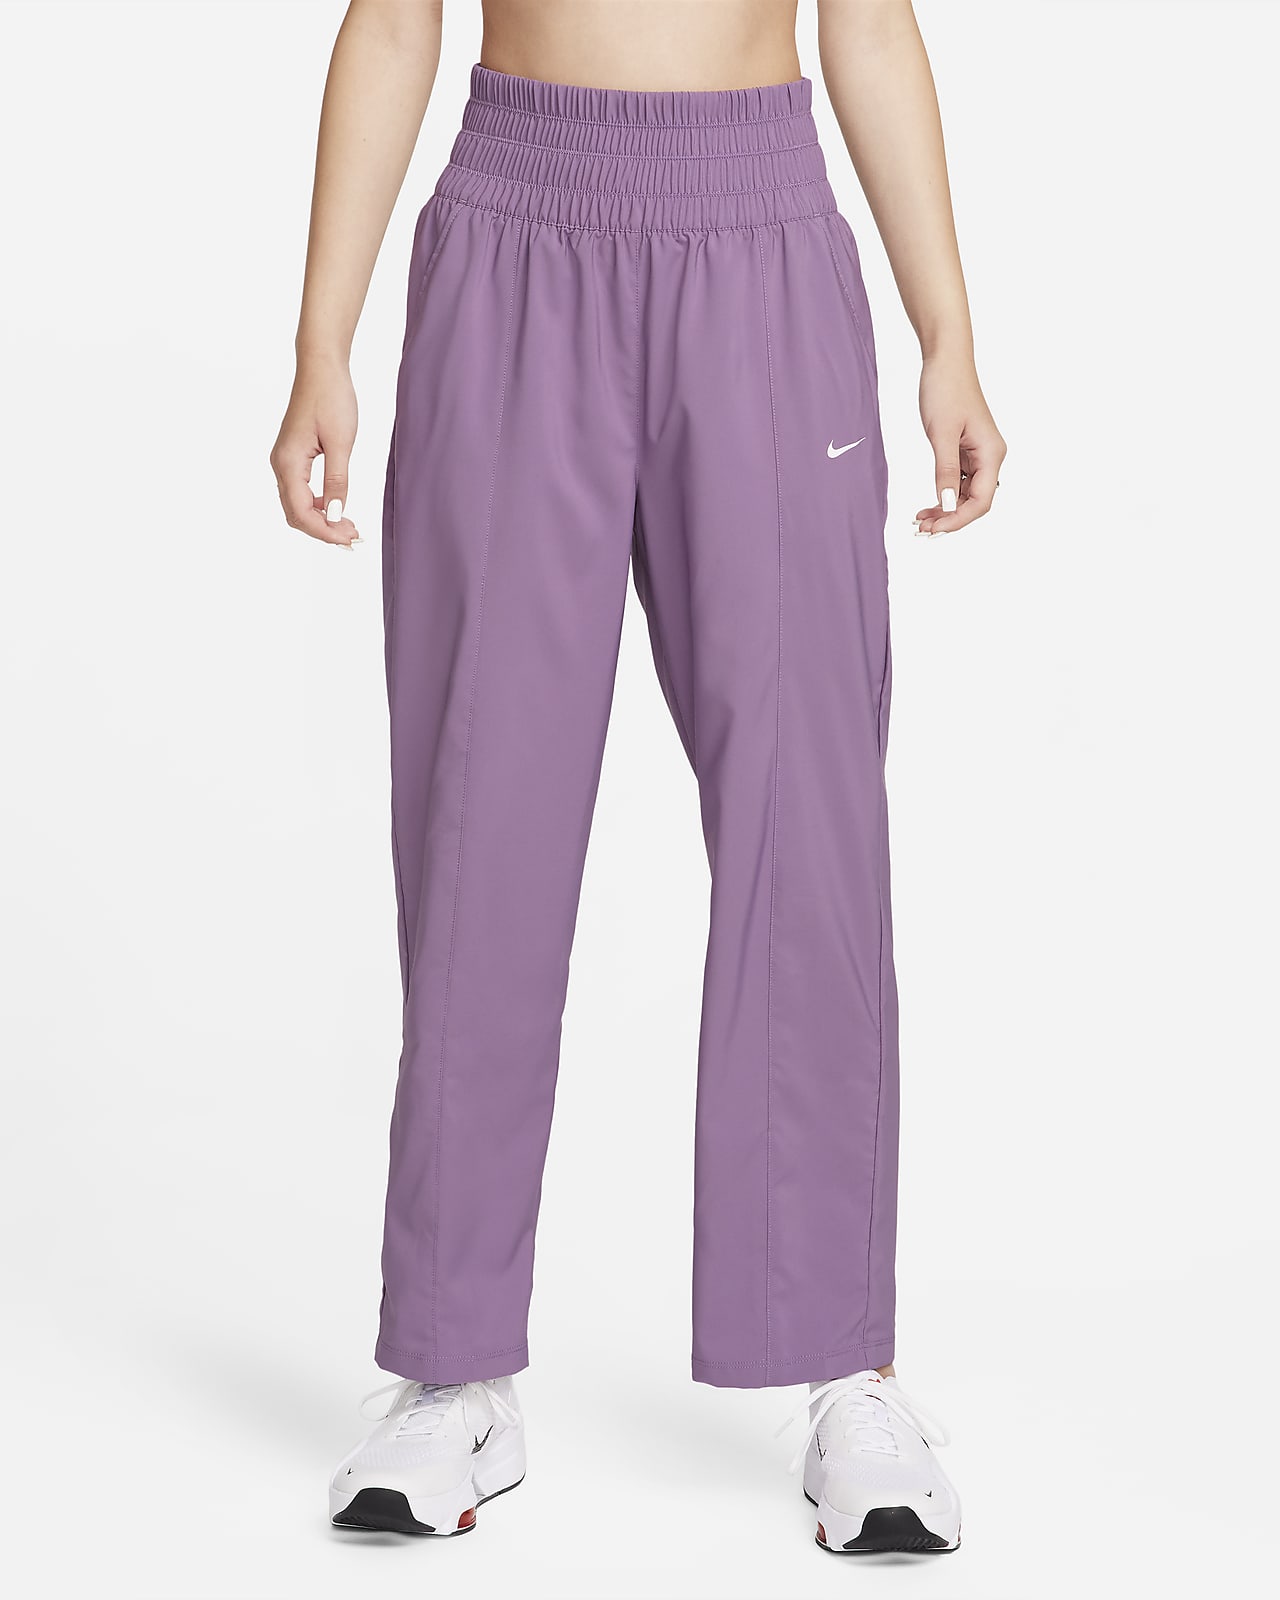 NBA Women's Sweatpants - Pink - XL